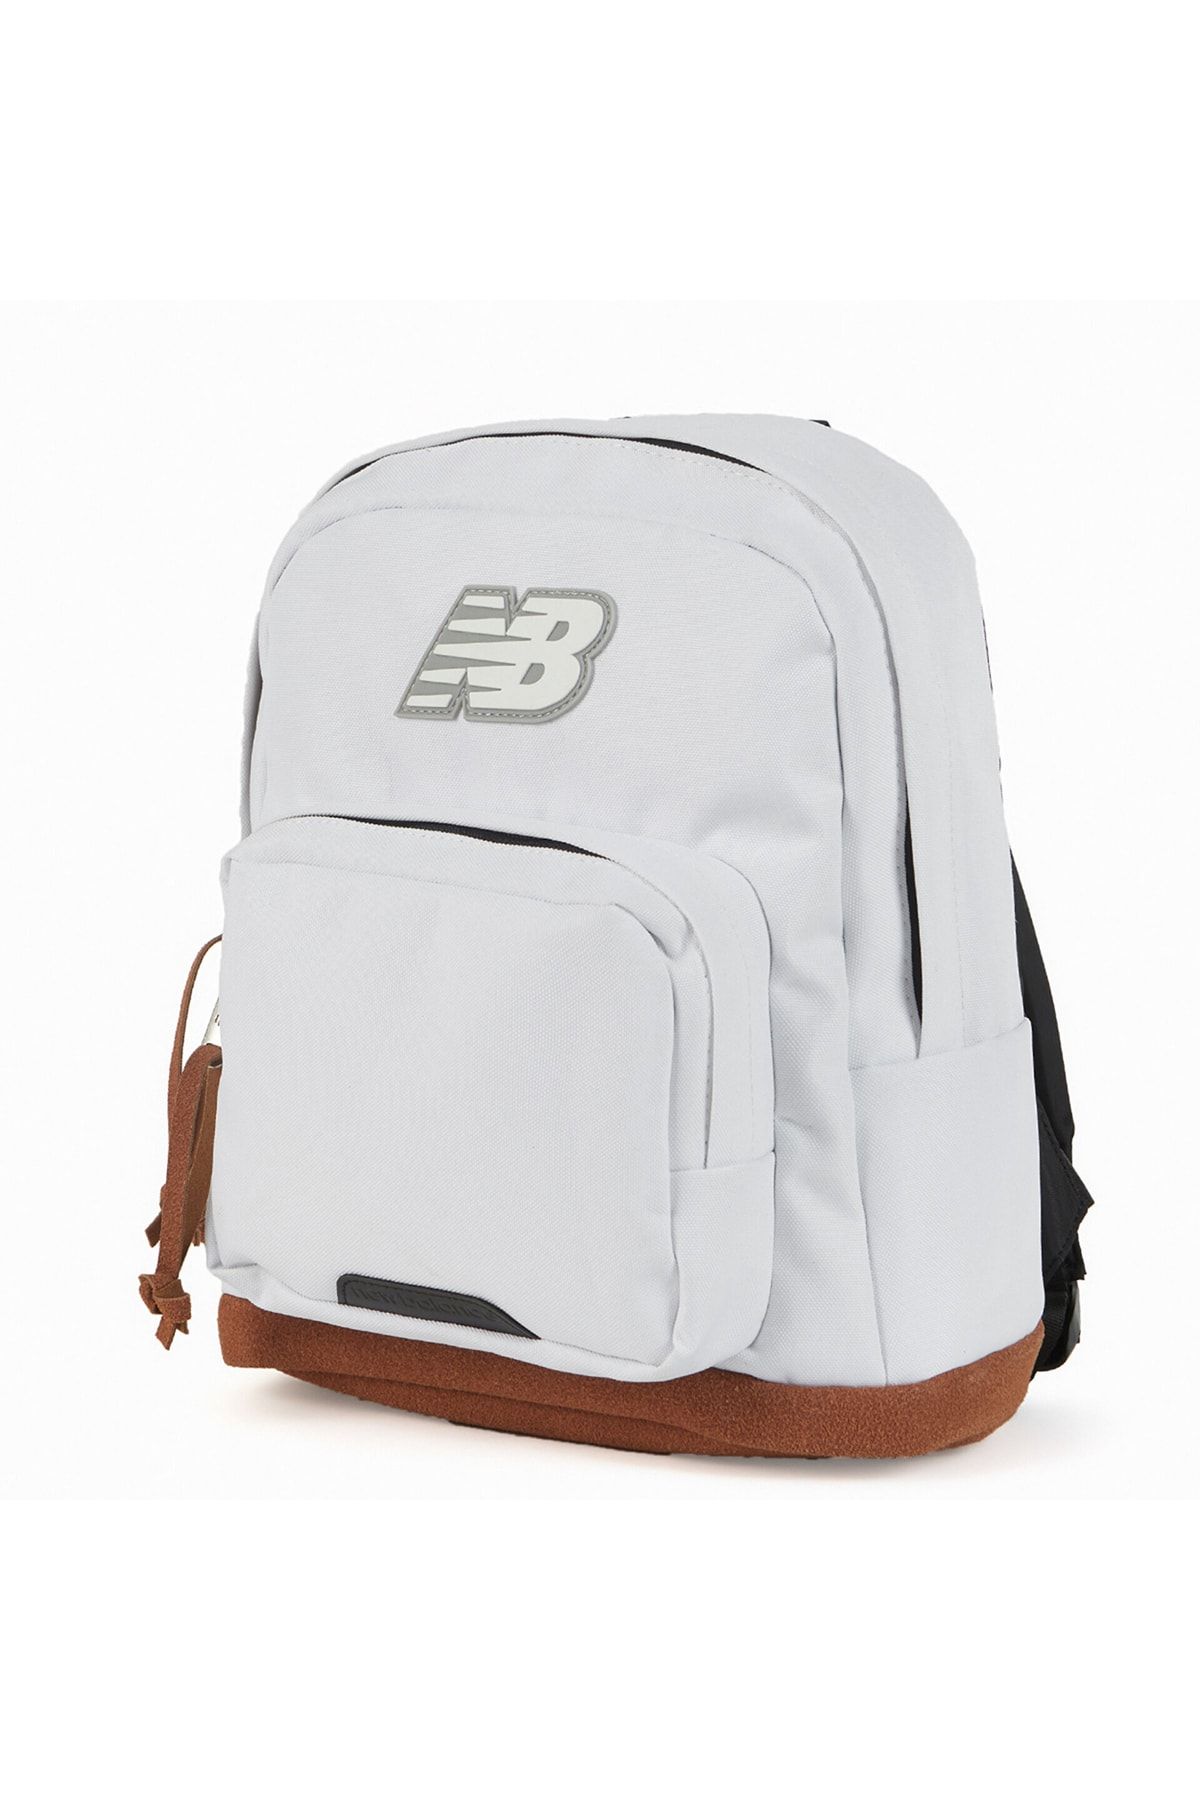 New Balance Nb Mini Backpack Unisex Beyaz Çanta Anb3201-wt